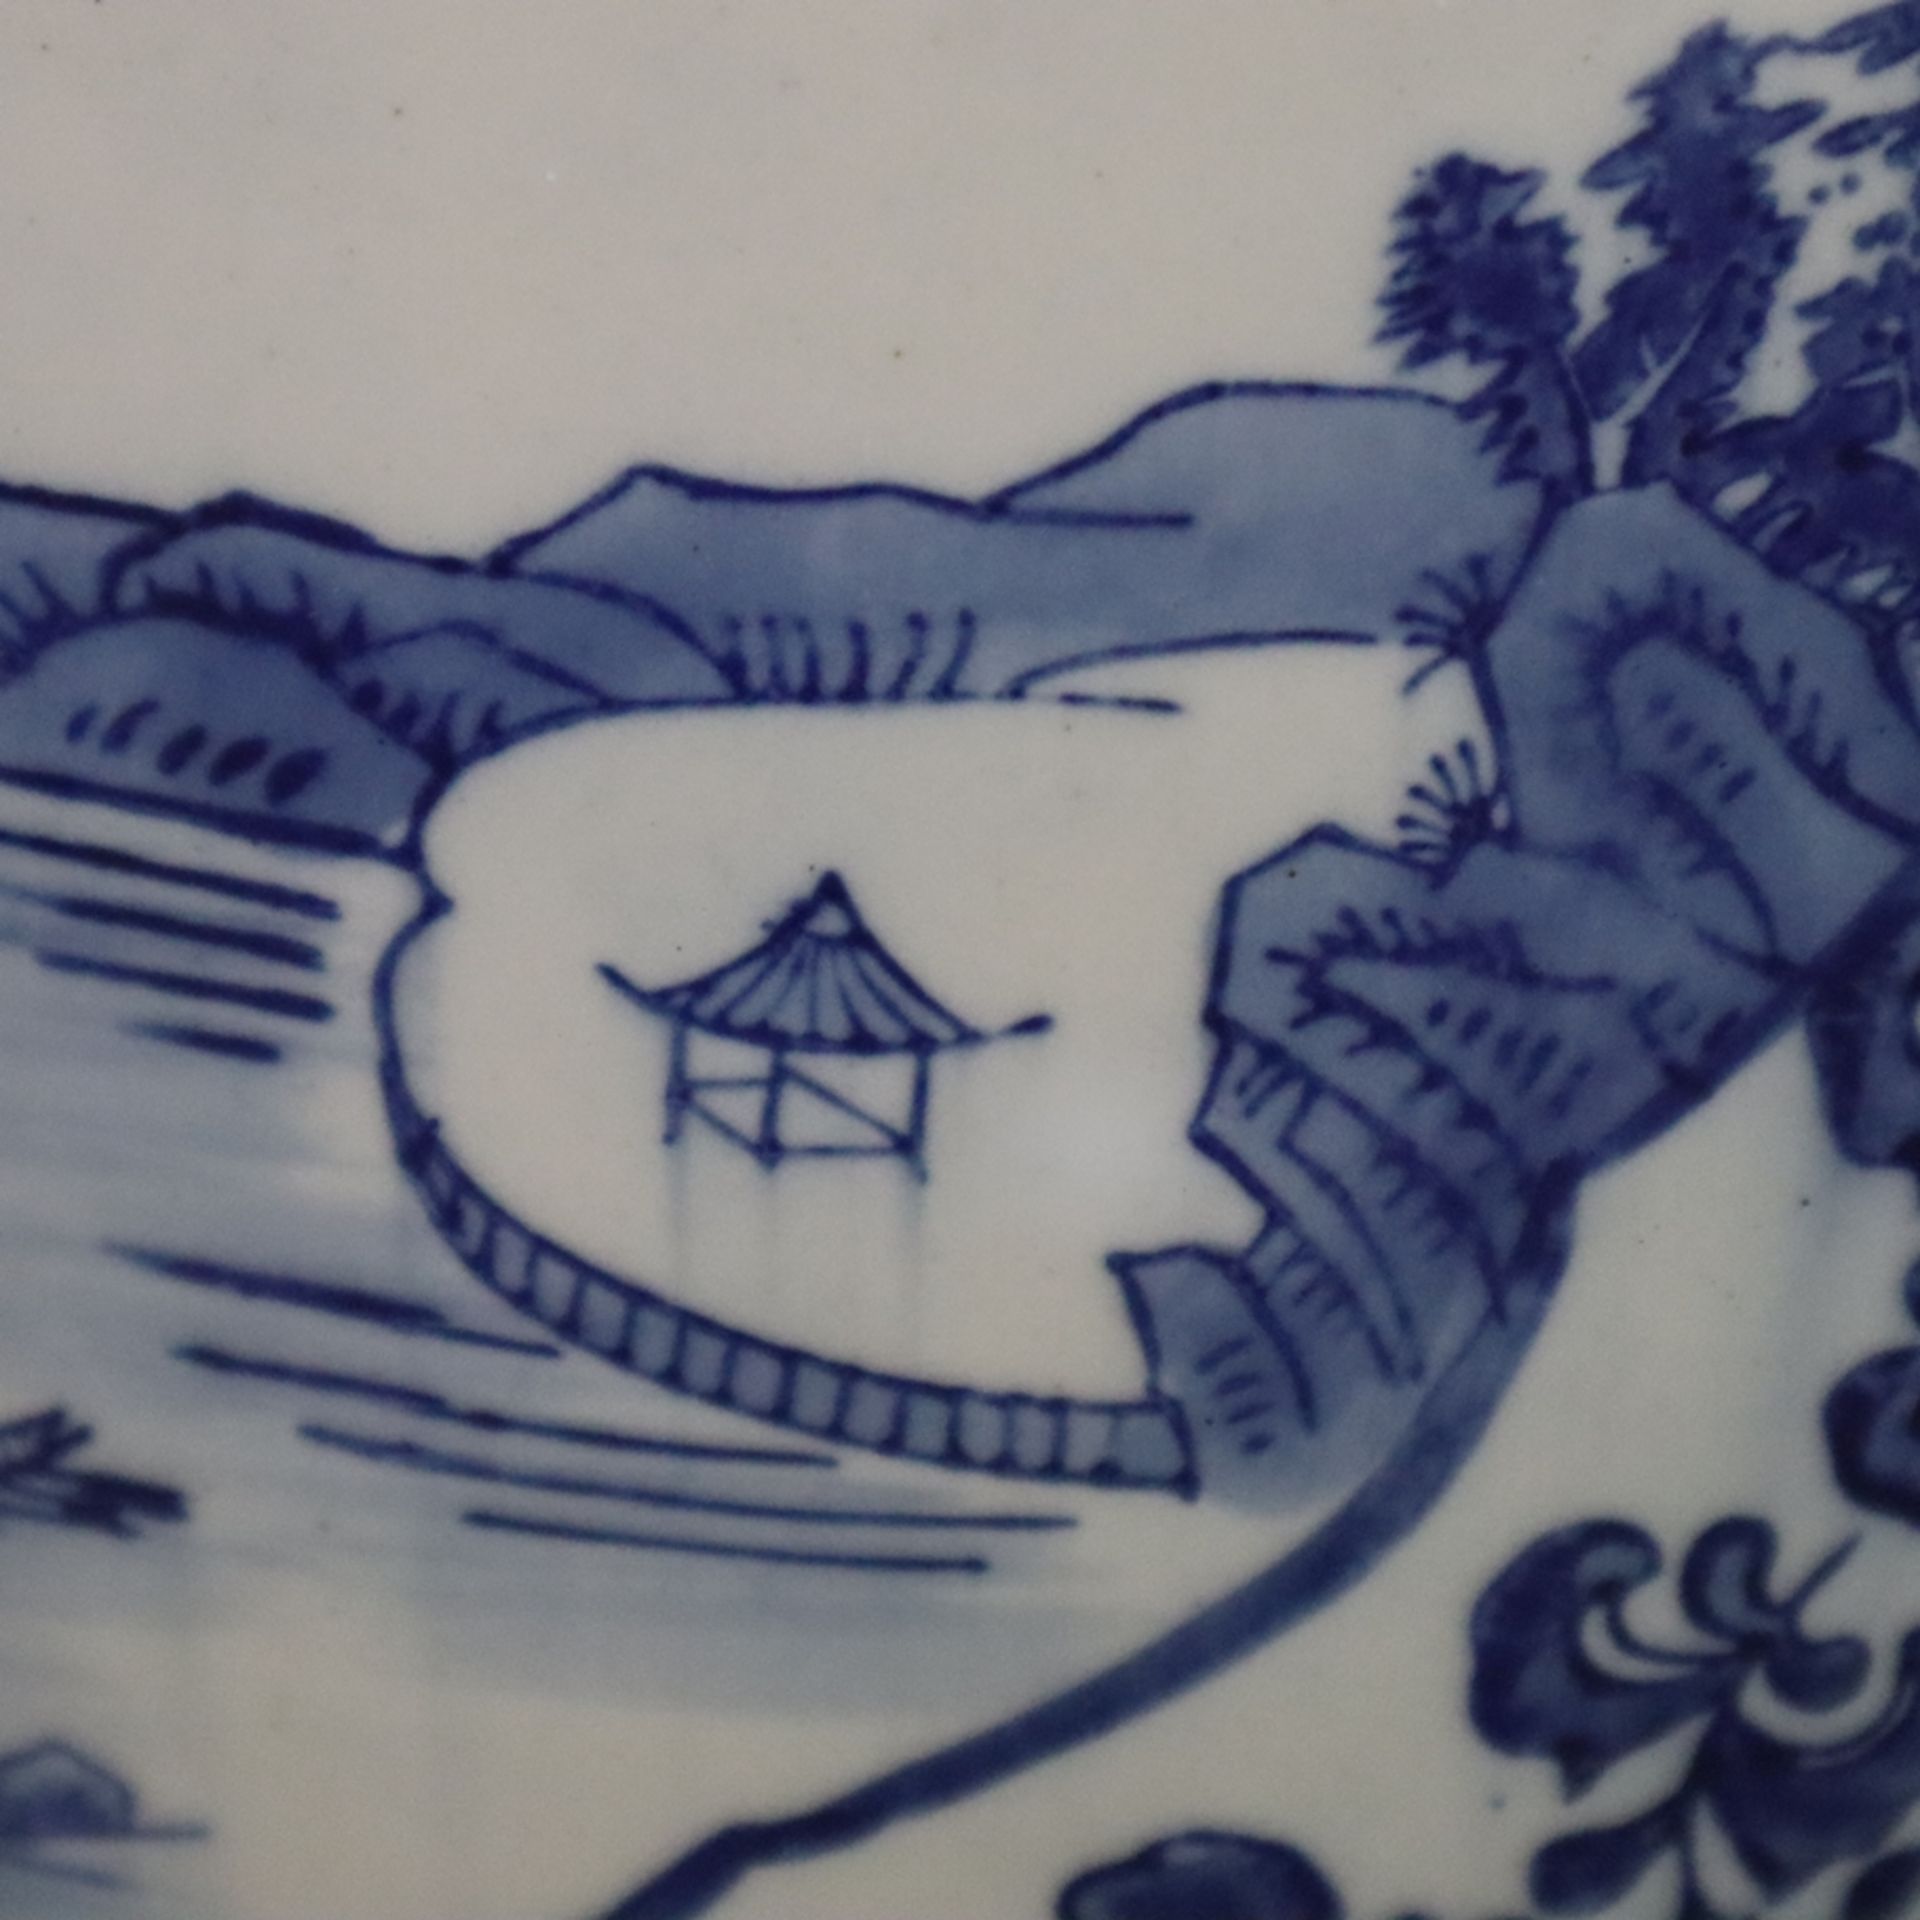 Hoher Ingwertopf - China 20.Jh., Porzellan mit Dekor in Unterglasurblau, schau- und rückseitig groß - Bild 9 aus 14